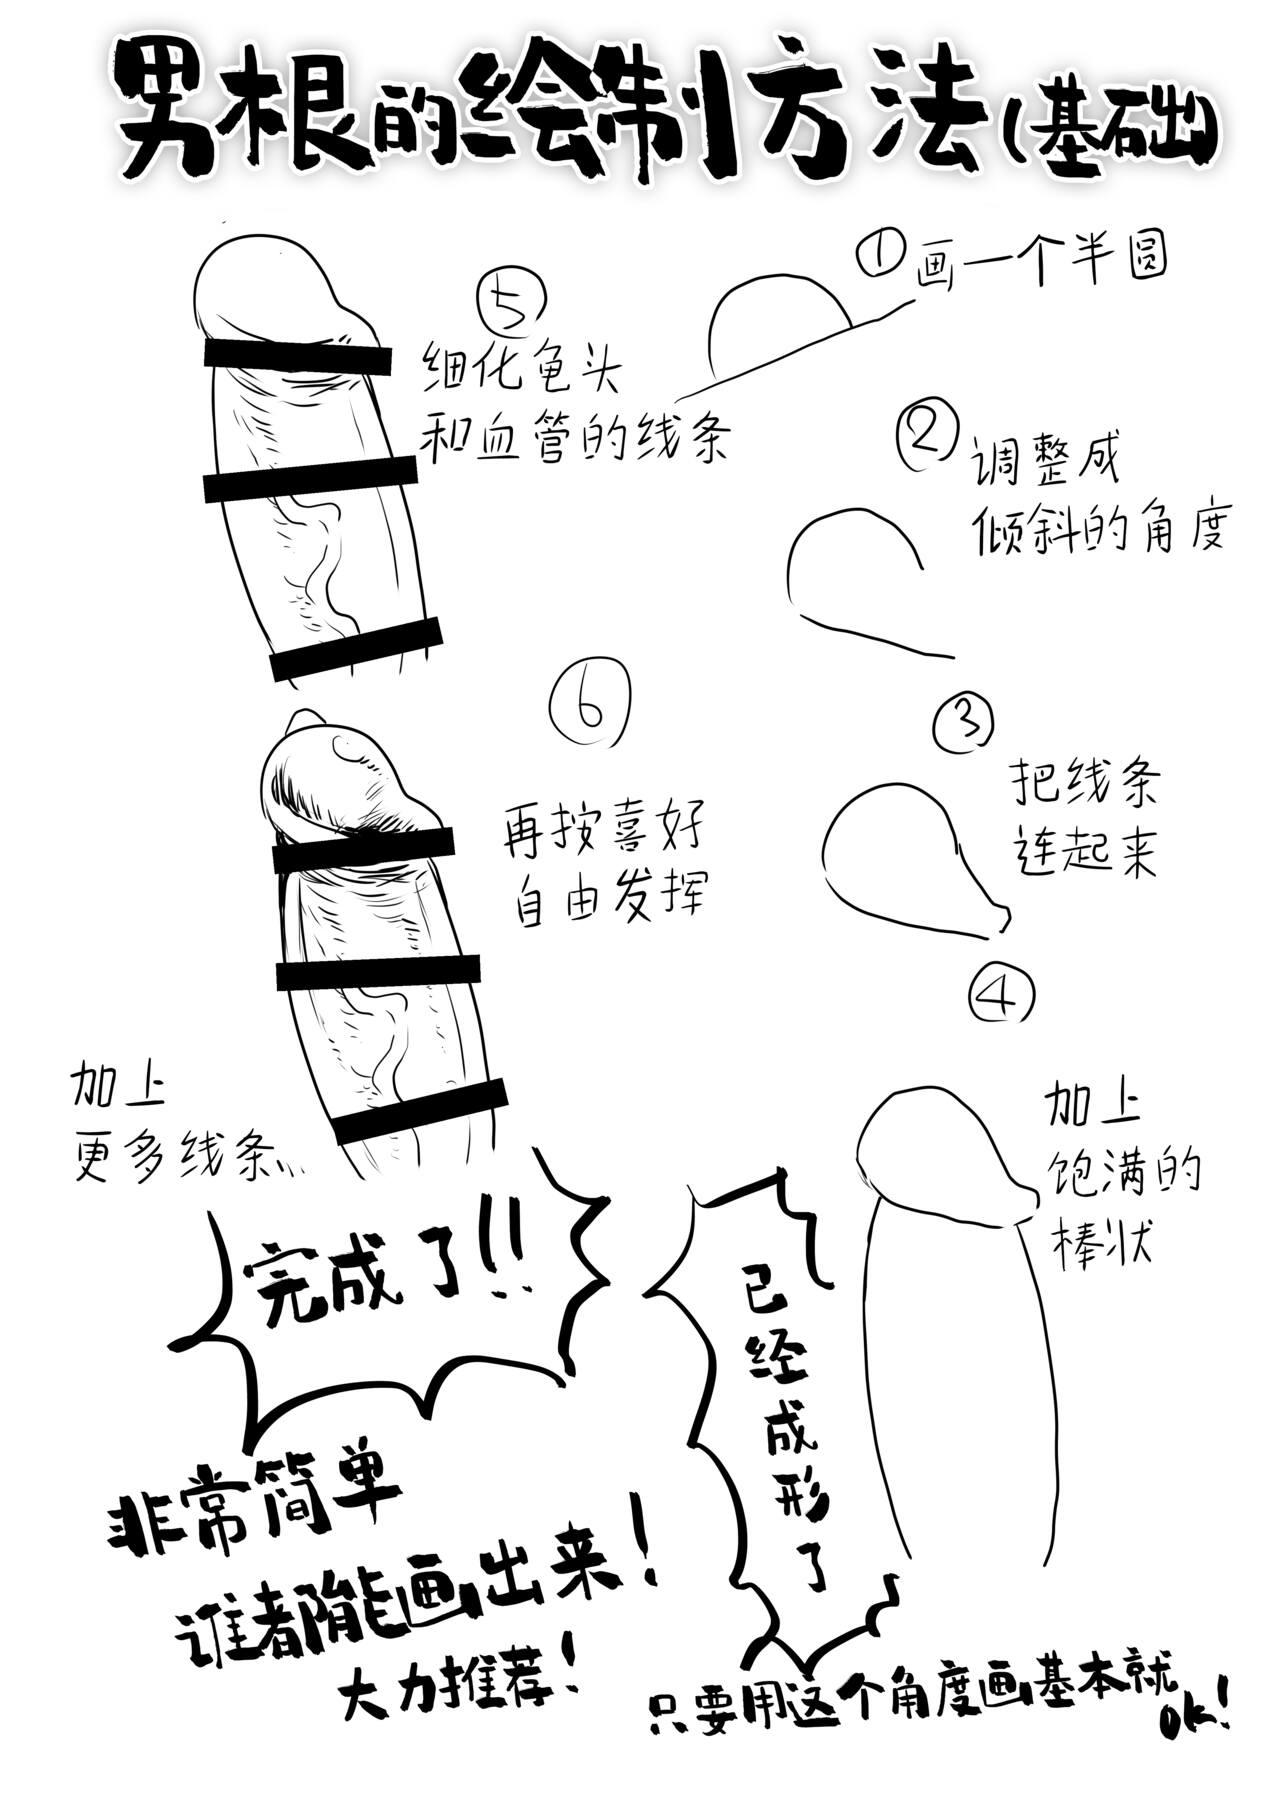 Black Chinpo no Egakikata to Keshi no Irekata | 男根的绘制方法与打码的方法 - Original Wam - Page 3